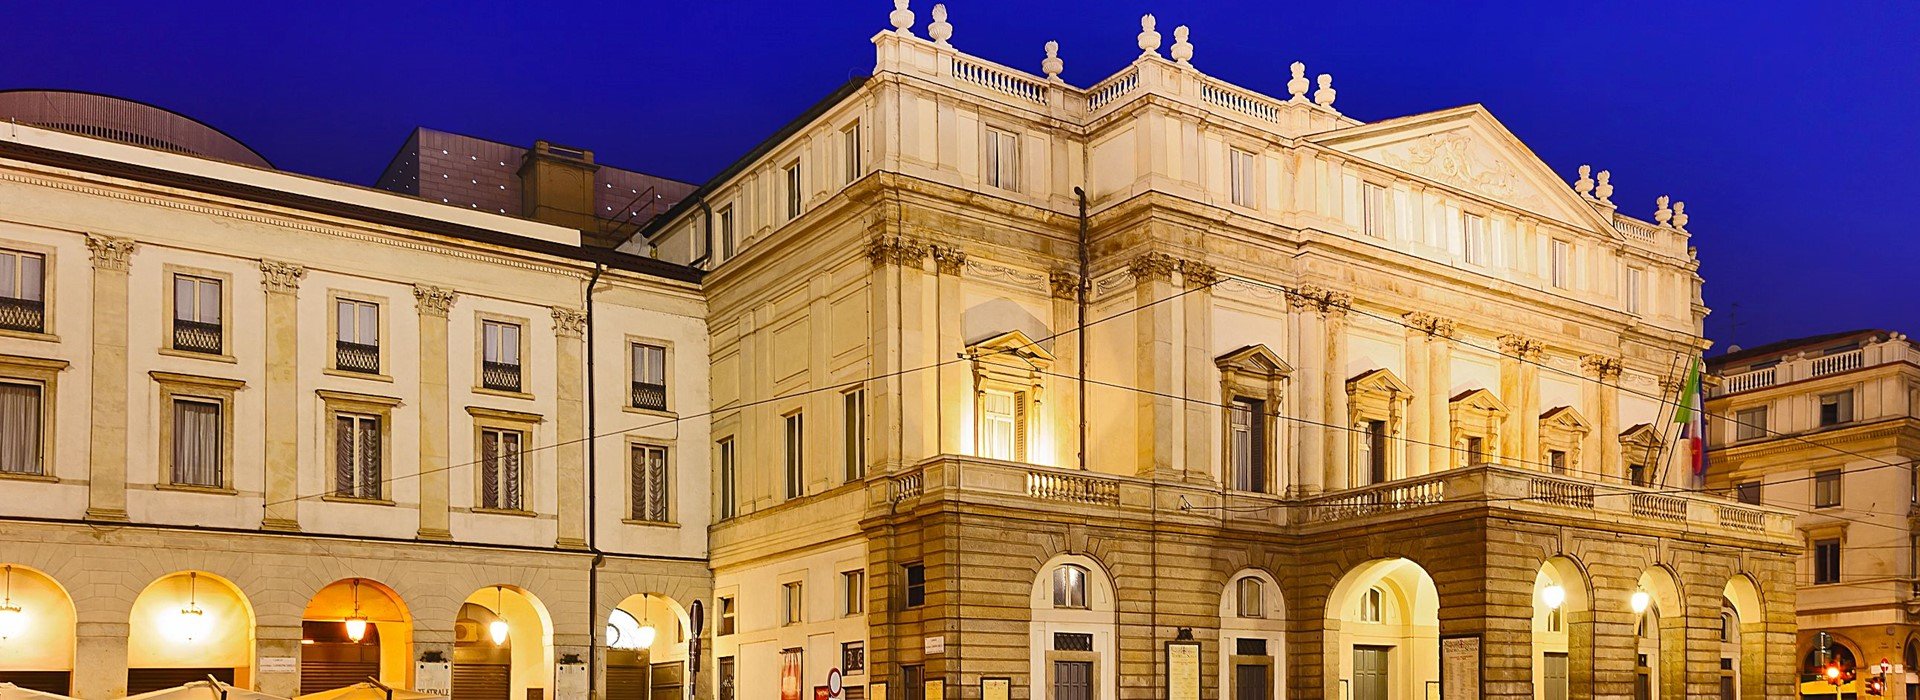 tourhub | Newmarket Holidays | Milan, Verona & Lake Garda 